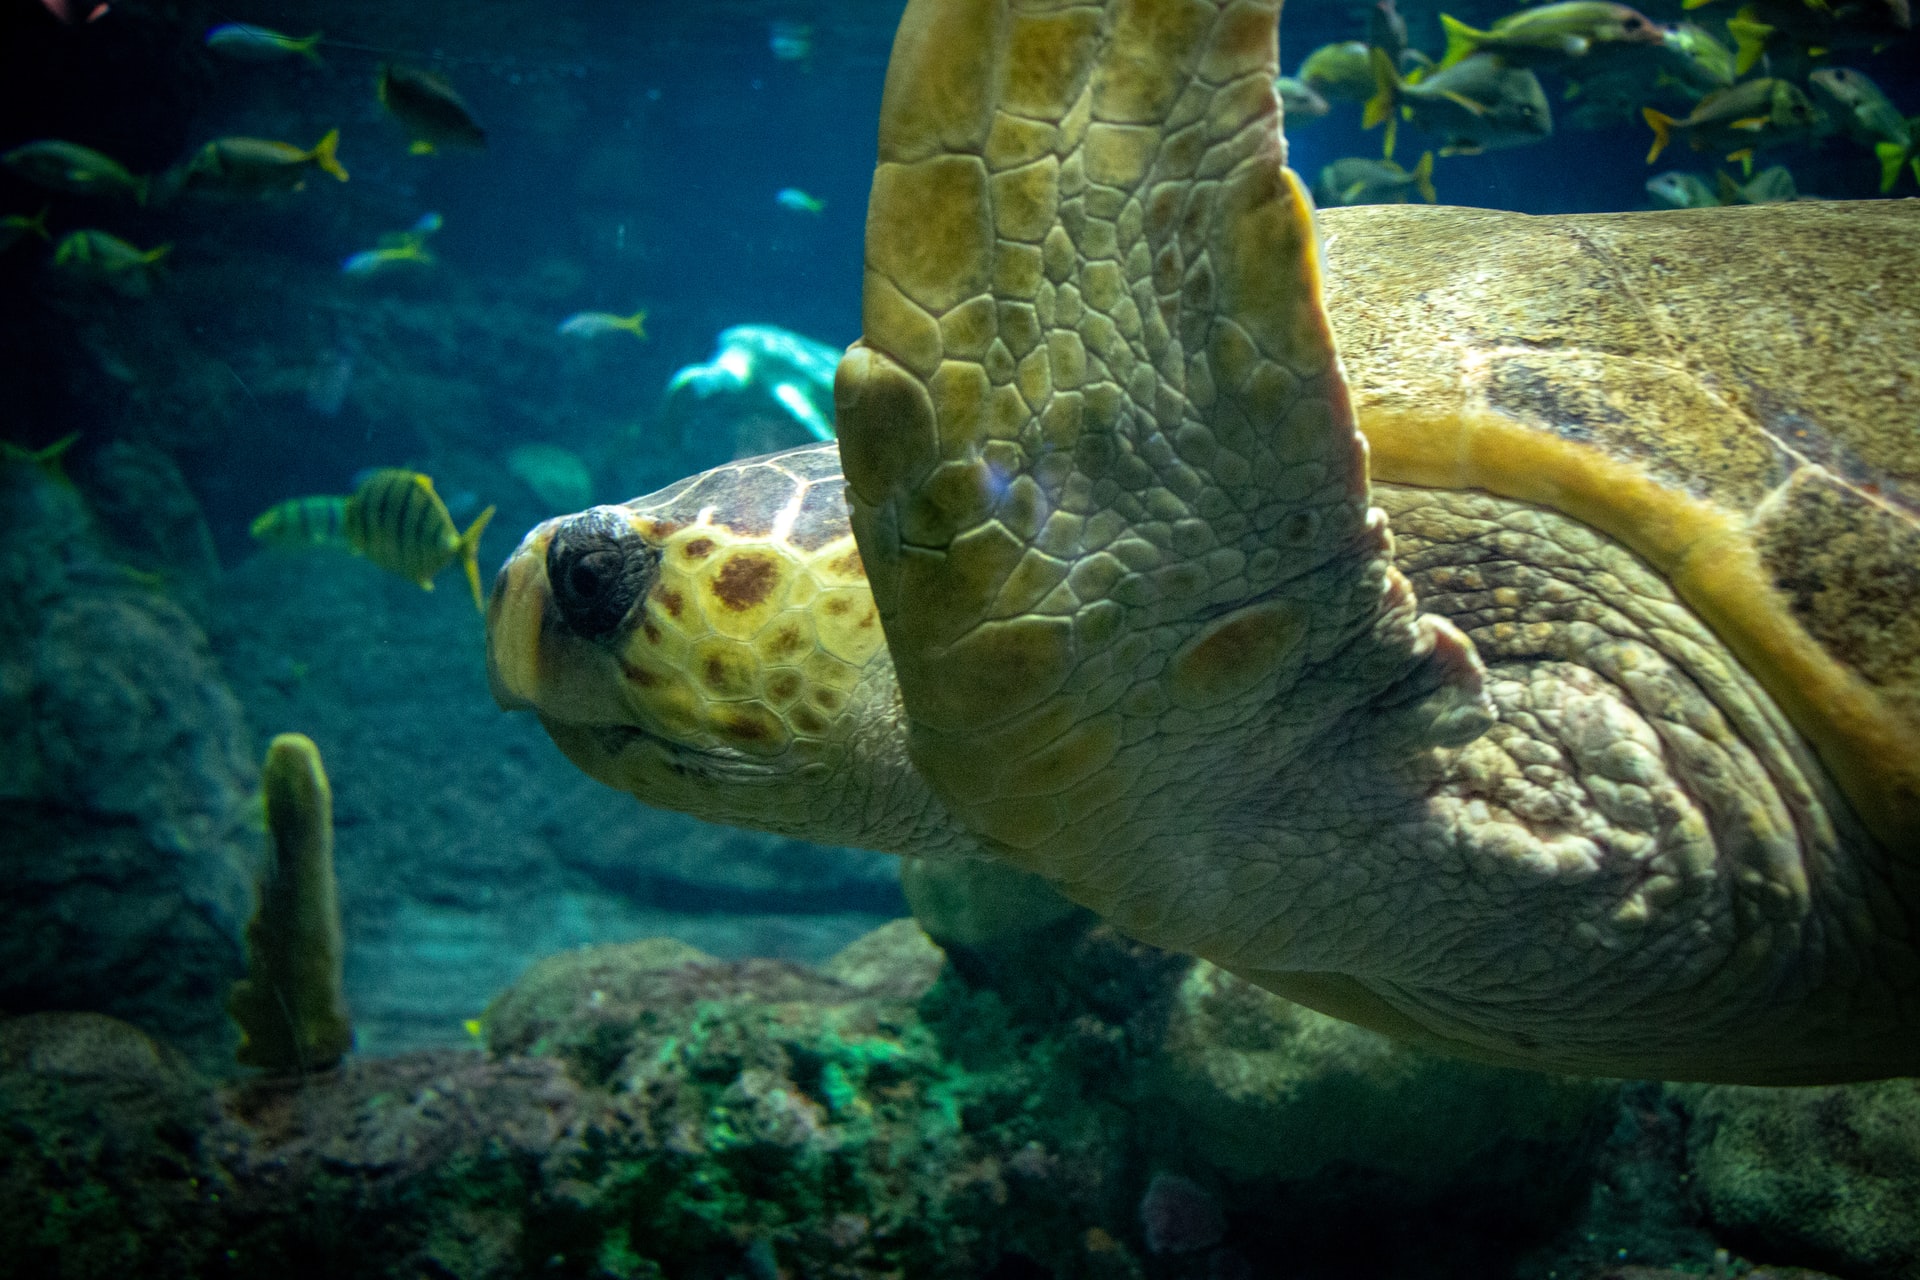 En el Pacífico Oriental, un grupo de tortugas verdes que tienen caparazón más oscuro son llamadas tortugas negras por la comunidad local. Las tortugas verdes se encuentran principalmente en aguas tropicales y subtropicales. Al igual que otras tortugas marinas, migran largas distancias entre las zonas de alimentación y las playas donde nacieron. Clasificadas como en peligro de extinción, las tortugas verdes están amenazadas por la sobreexplotación de sus huevos, la caza de adultos, la captura en artes de pesca y la pérdida de los lugares de anidación en las playas.